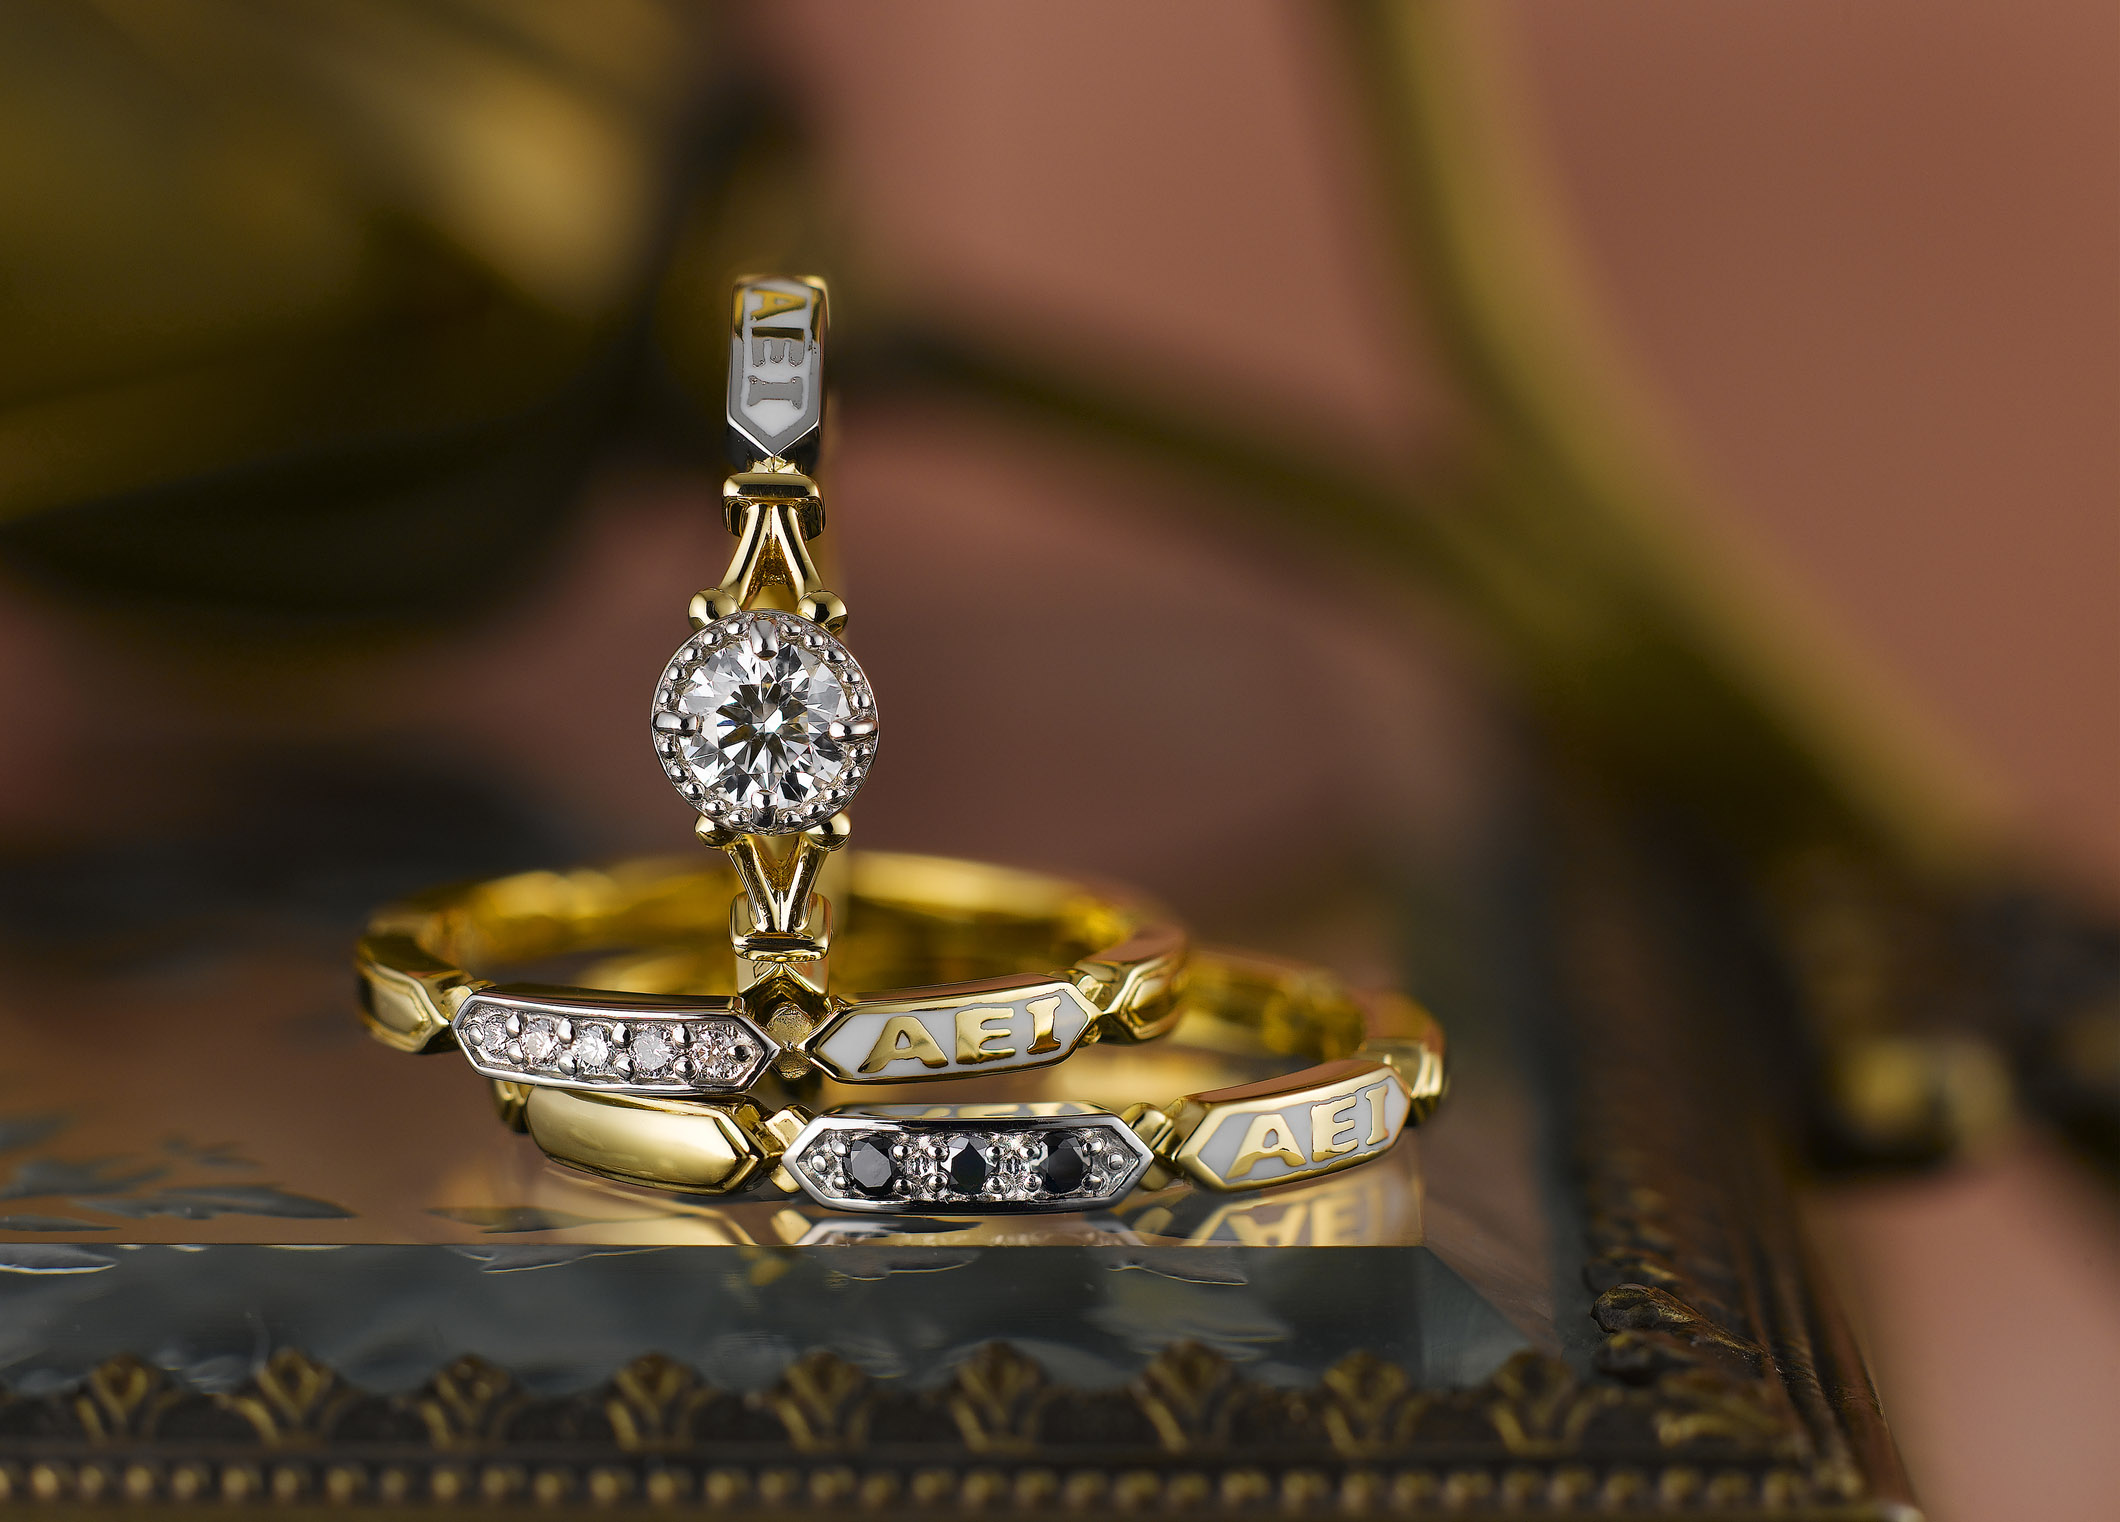 静岡市 おしゃれ女子に人気のアンティーク調ブライダルリング Jewelry Story ジュエリーストーリー ブライダル情報 婚約指輪 結婚 指輪 結婚式場情報サイト